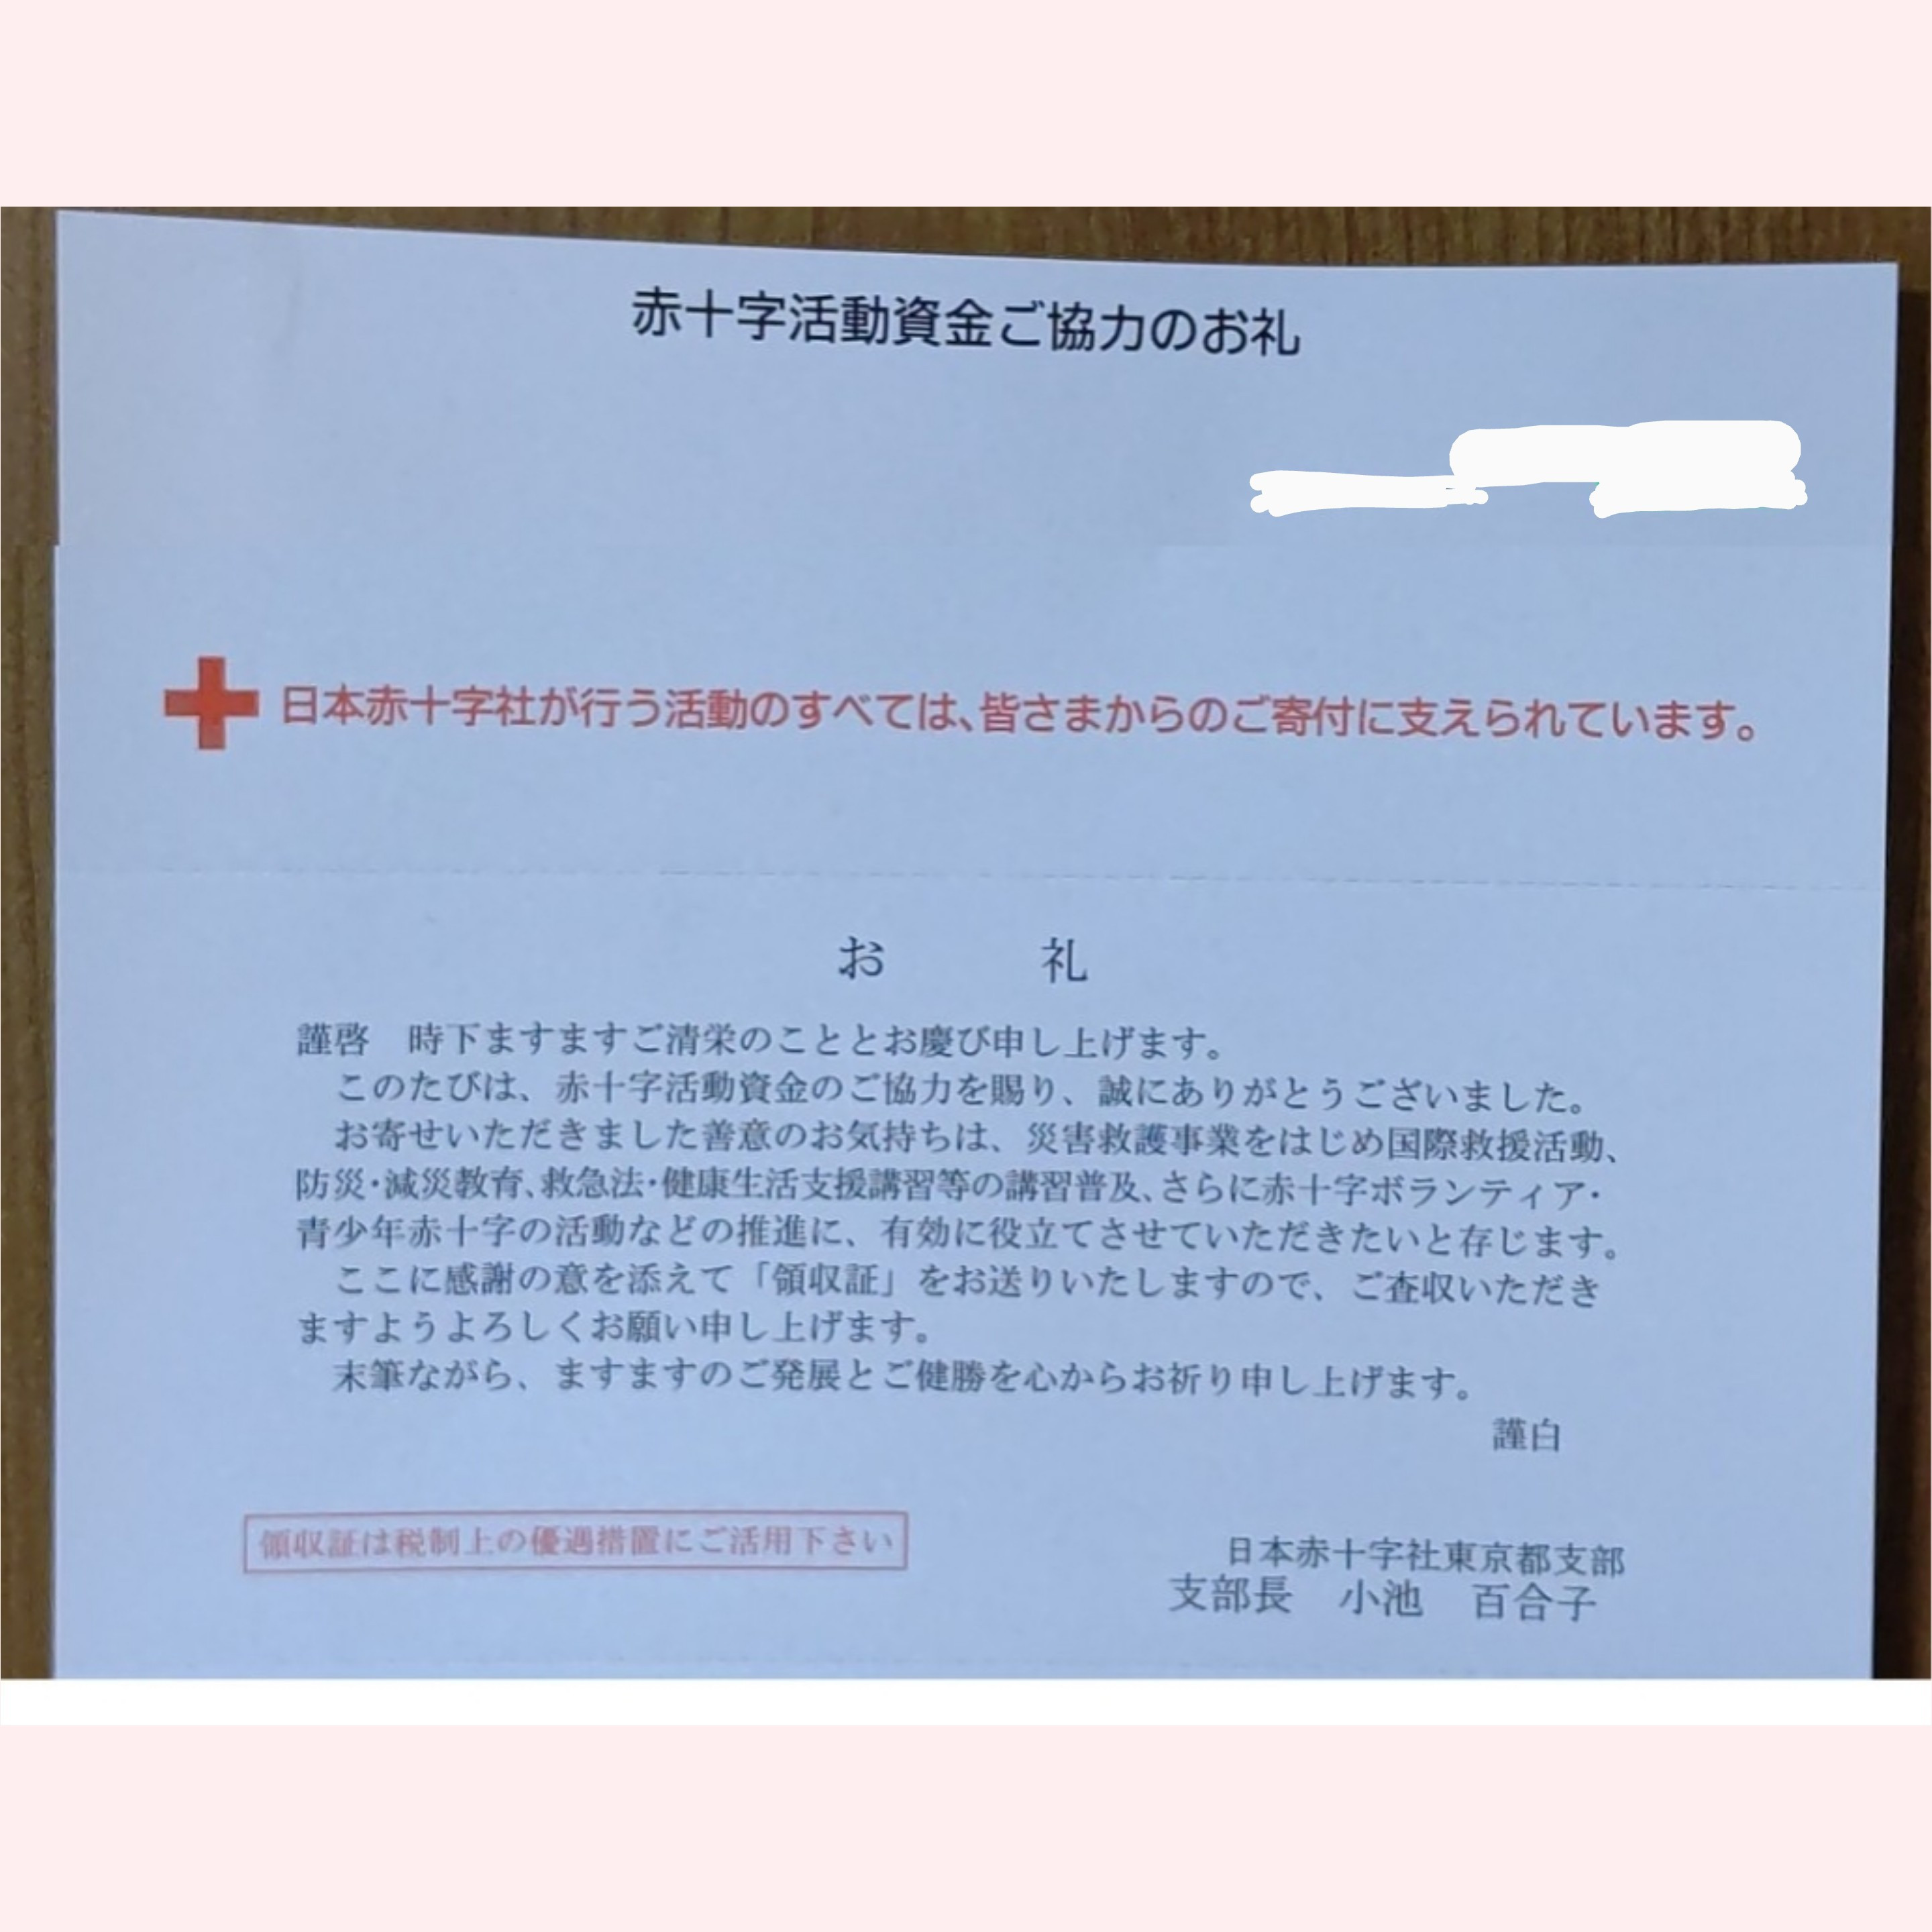 [2018年]赤十字活動資金ご協力のお礼をいただきました